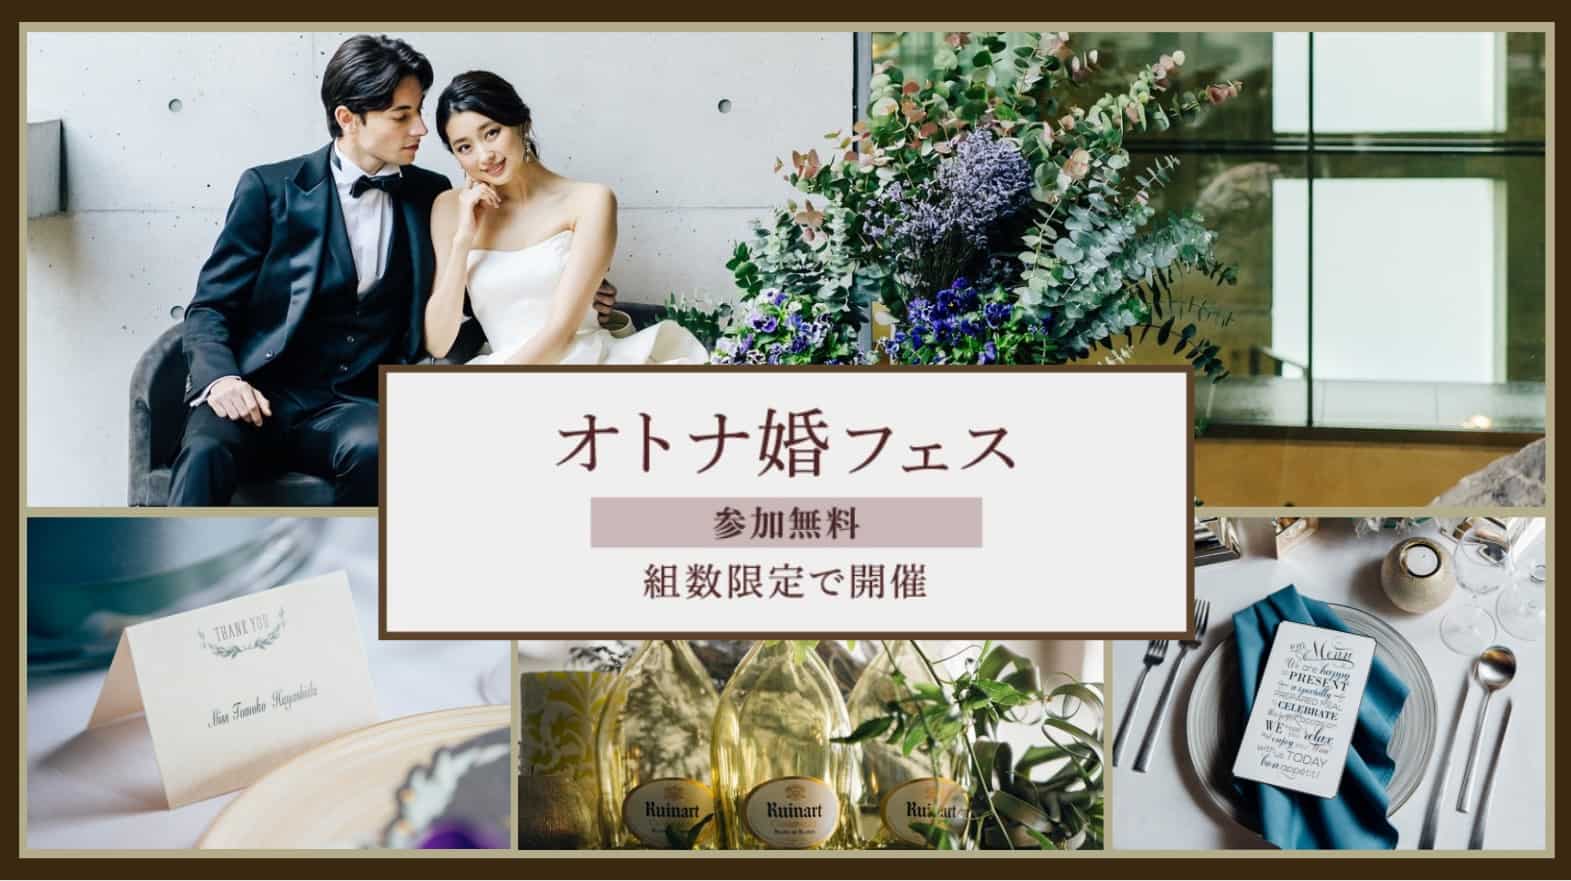 10月組数限定 センス溢れるこだわりの結婚式場を探している人へ オトナ婚フェス が大阪と京都で開催決定 結婚式準備はウェディングニュース